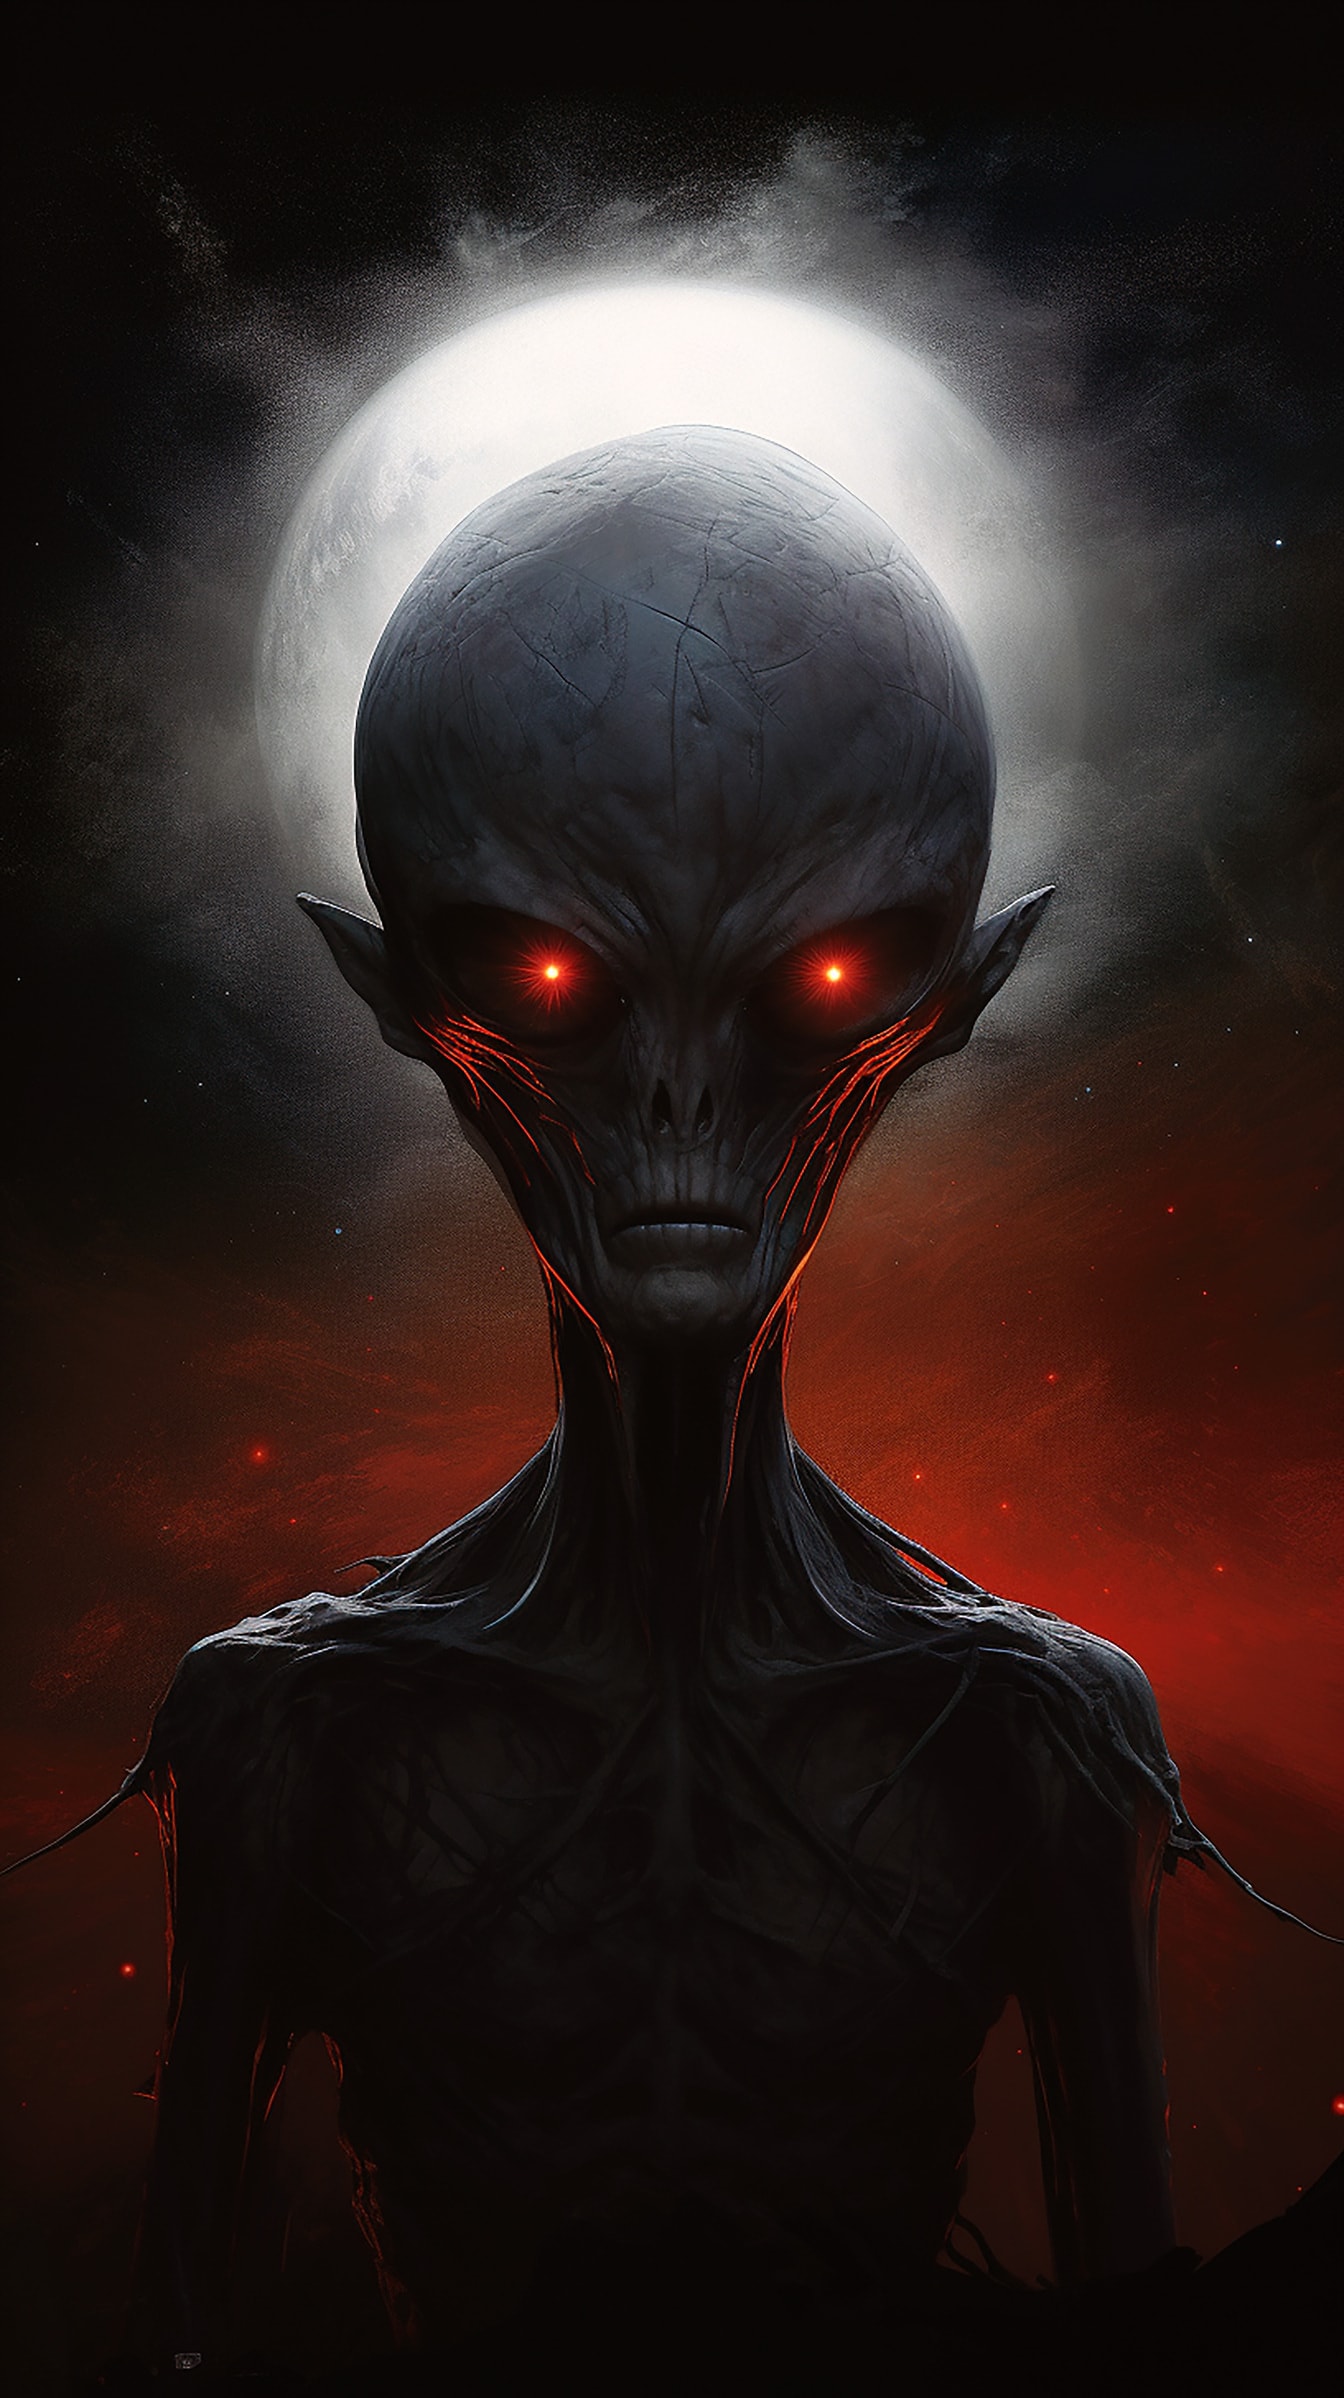 Ritratto horror di alieno con occhi rosso scuro e corpo snello